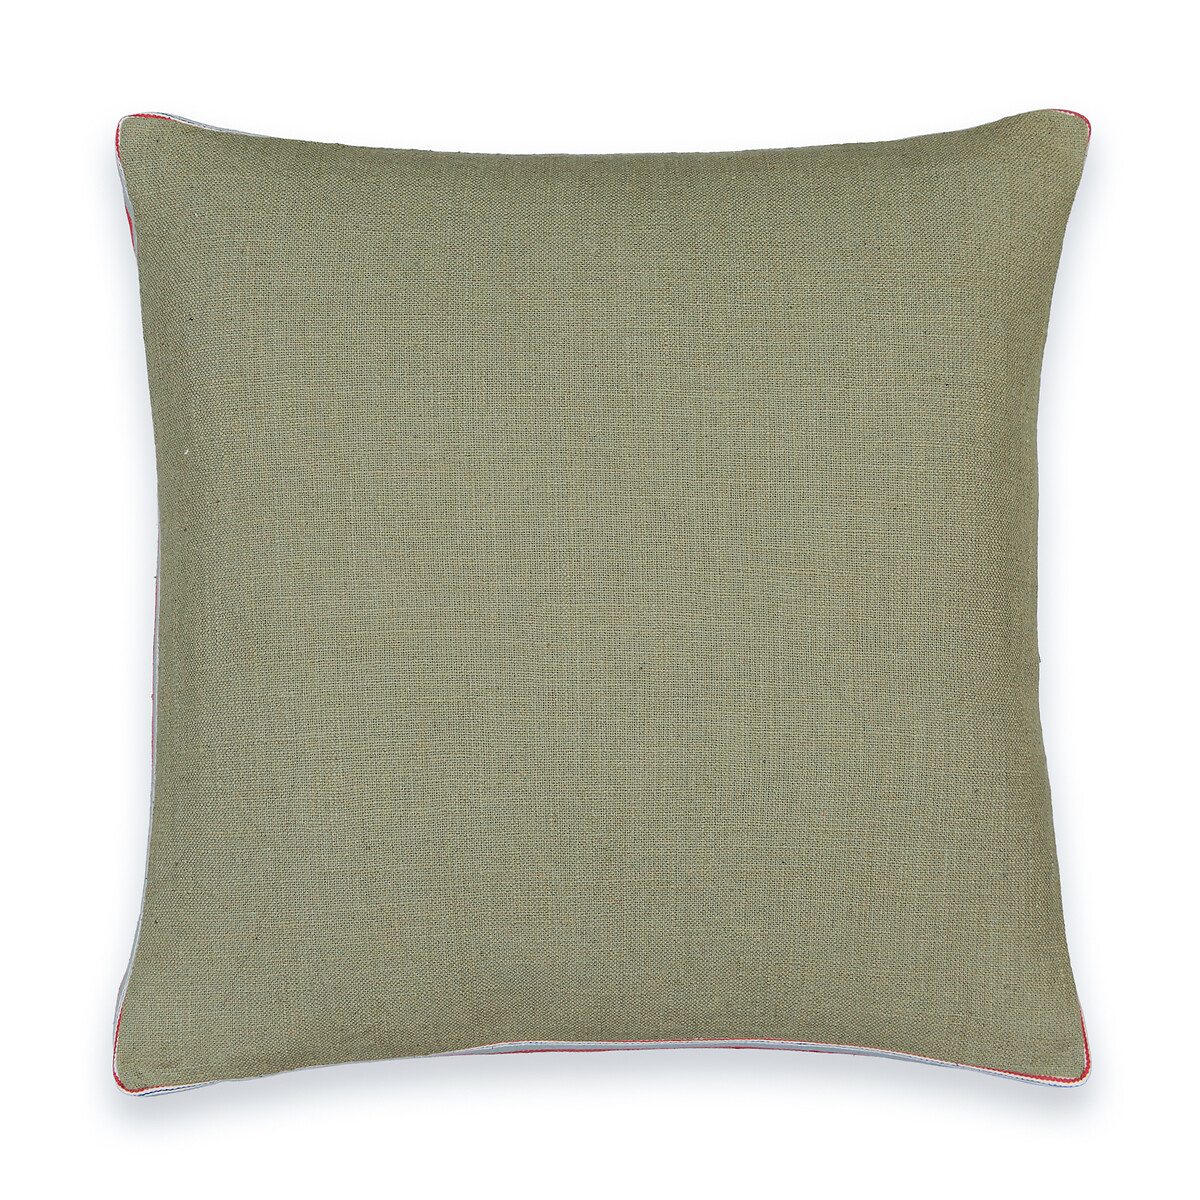 чехол на подушку joan 100 хлопок 40 x 40 см разноцветный Чехол на подушку 40 х 40 см двухцветный Finistre 40 x 40 см зеленый